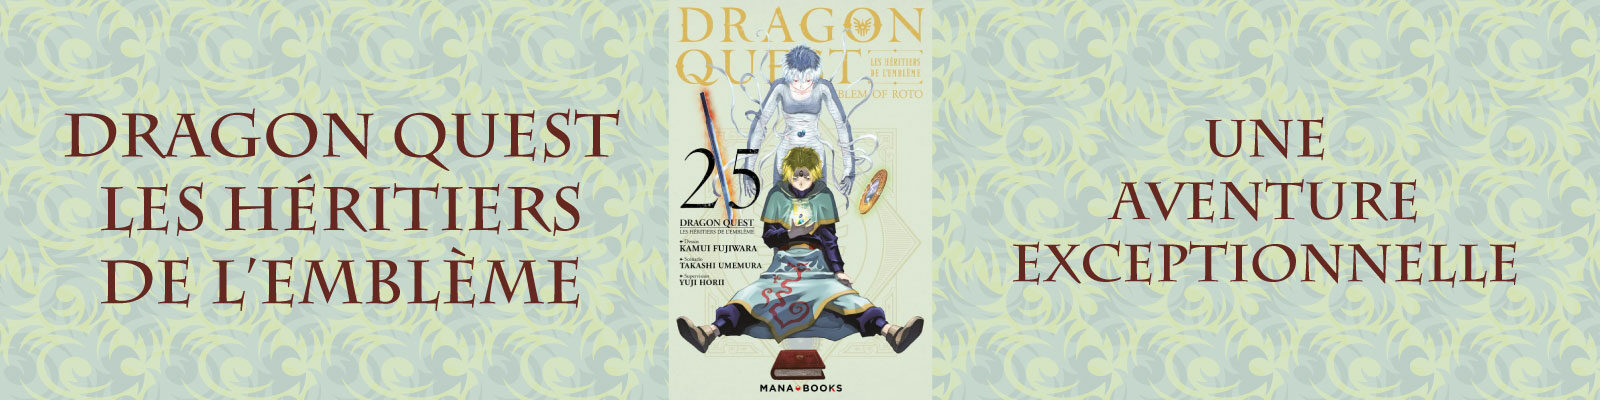 Dragon-Quest---Les Héritiers de l'Emblème